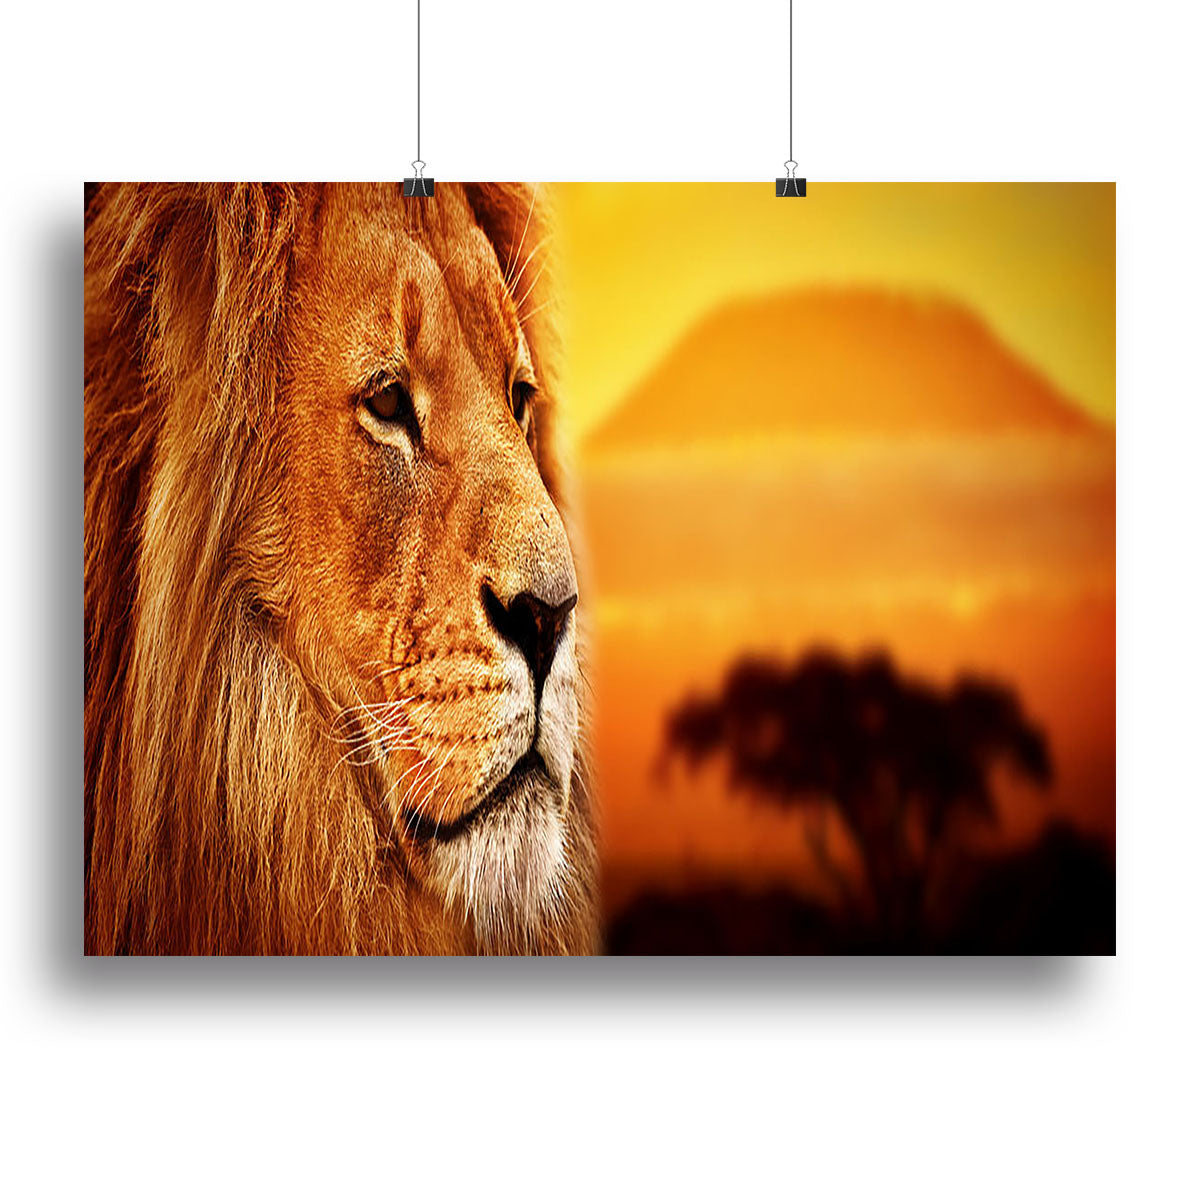 Lion portrait on savanna landscape Canvas Print or Poster - Canvas Art Rocks - 2